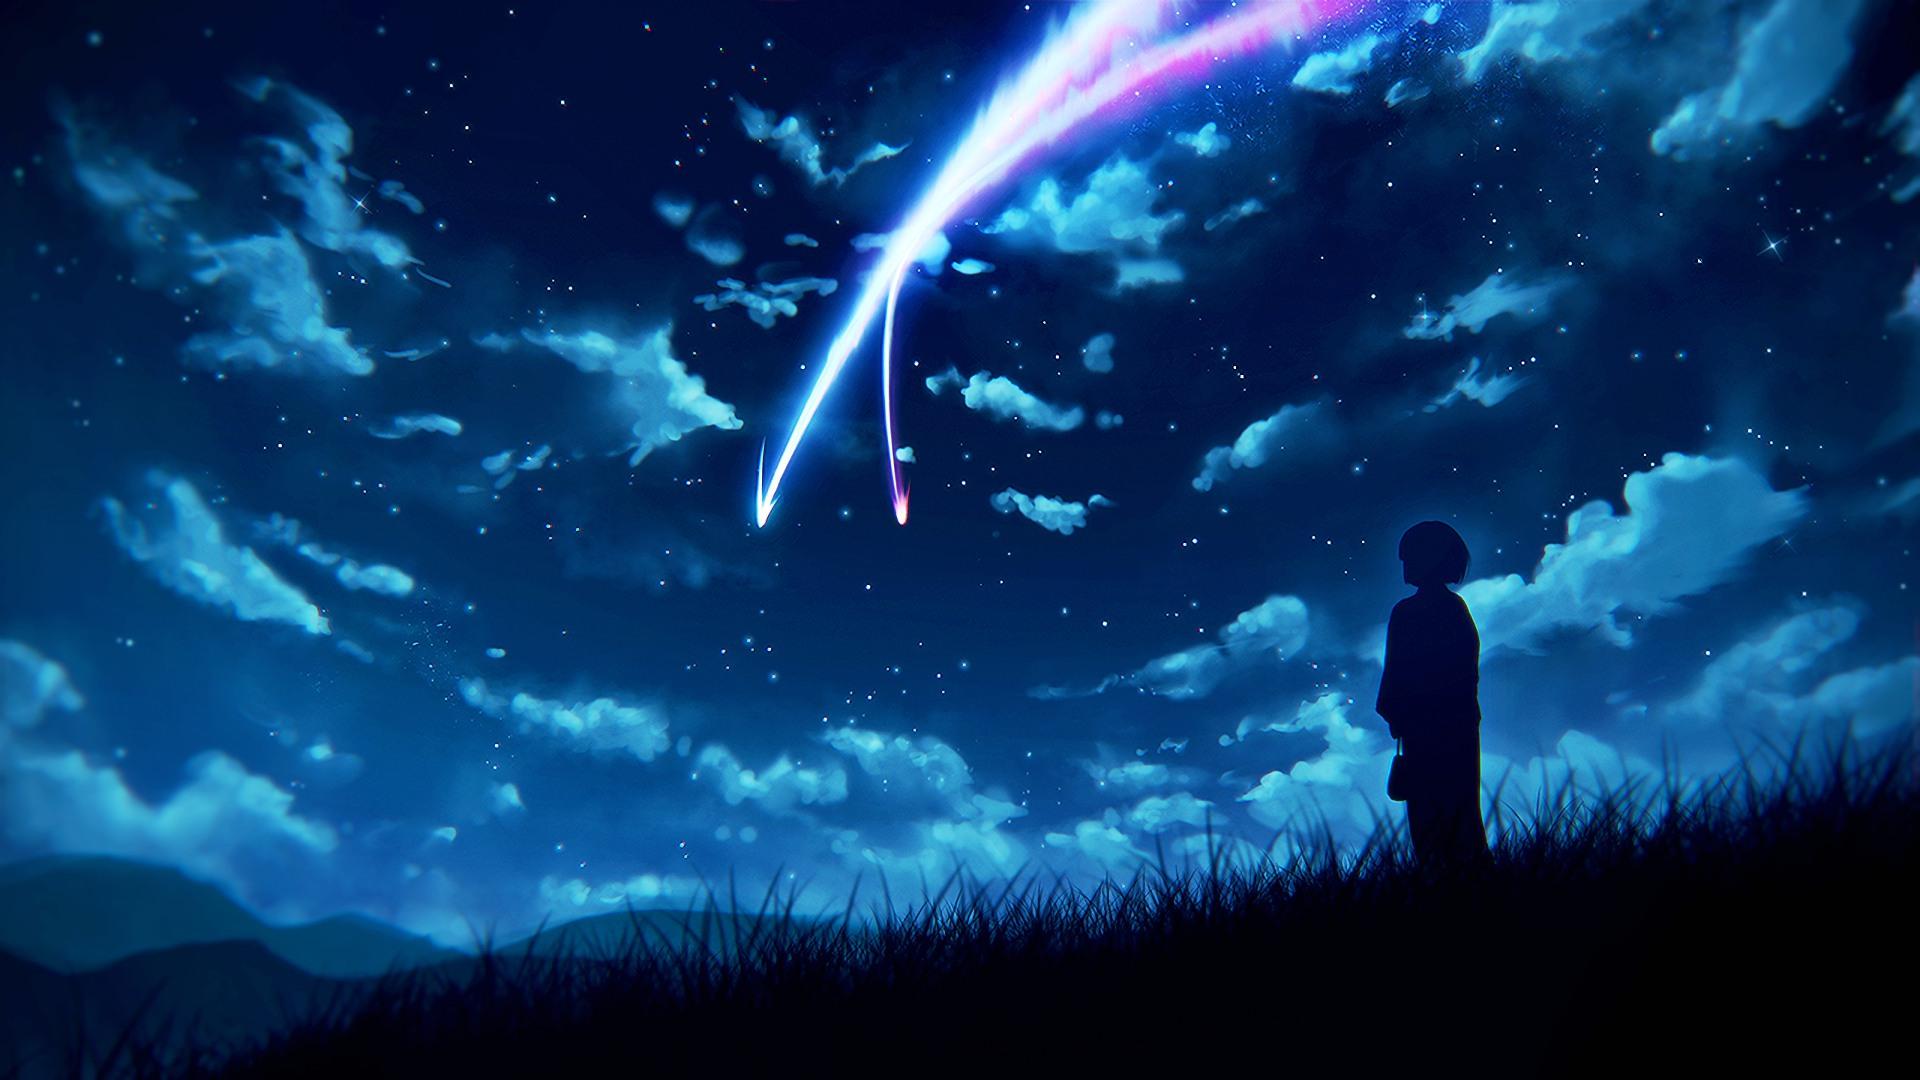 Aesthetic-Anime-Wallpaper-Sky-Light.jpg